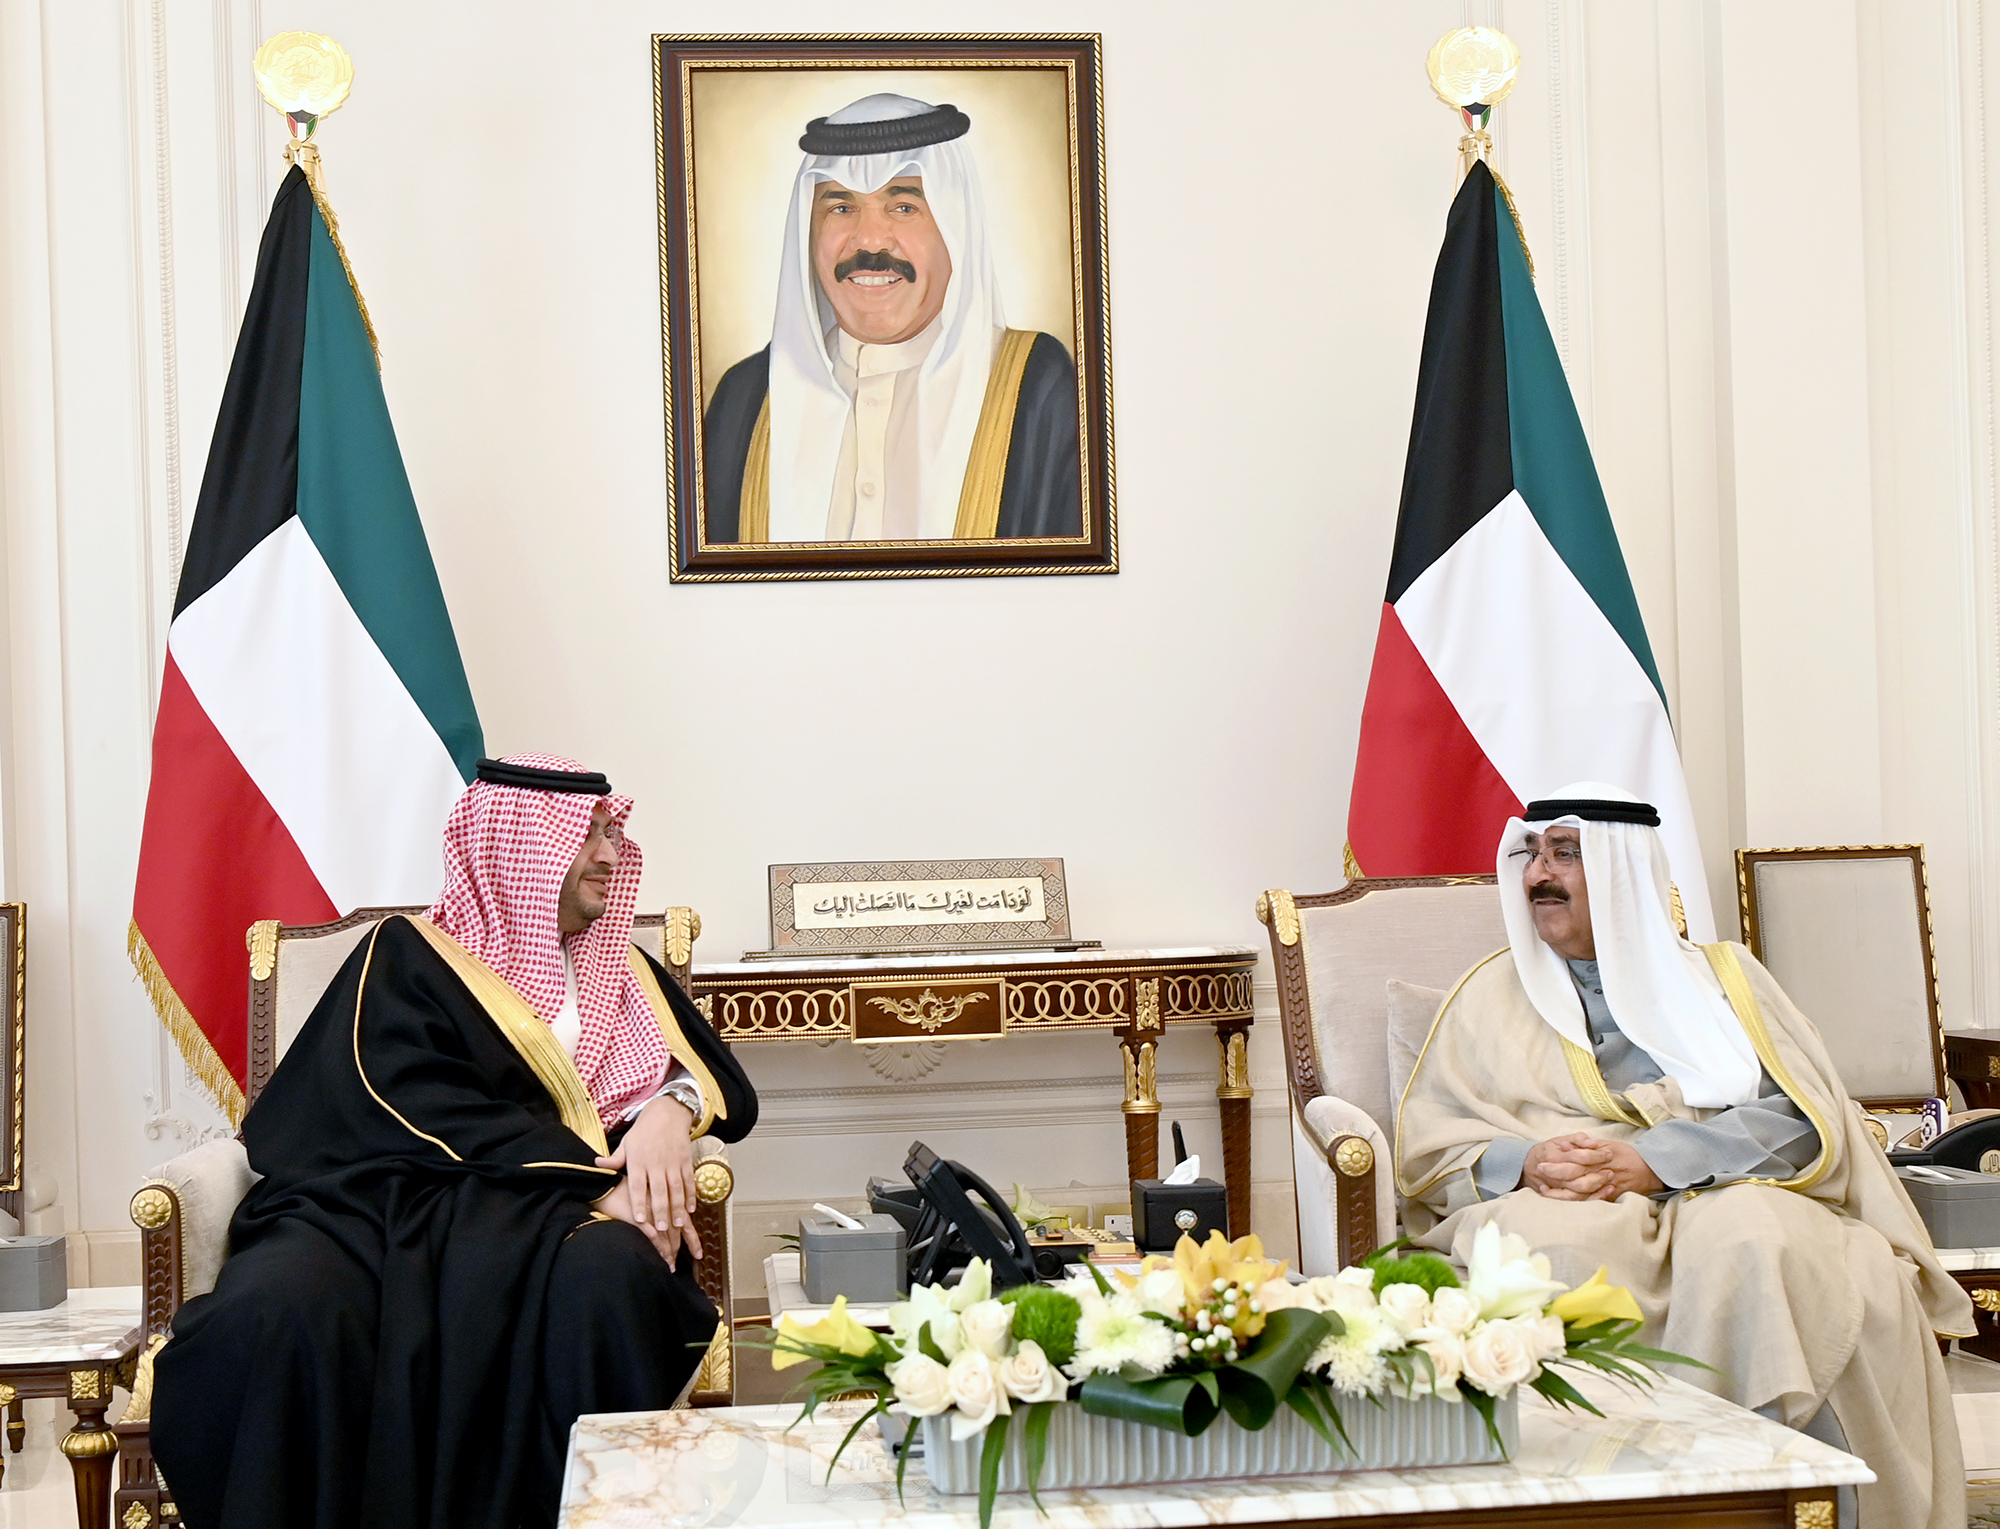 سمو ولي العهد يستقبل وزير الدولة عضو مجلس الوزراء السعودي الأمير تركي بن محمد آل سعود